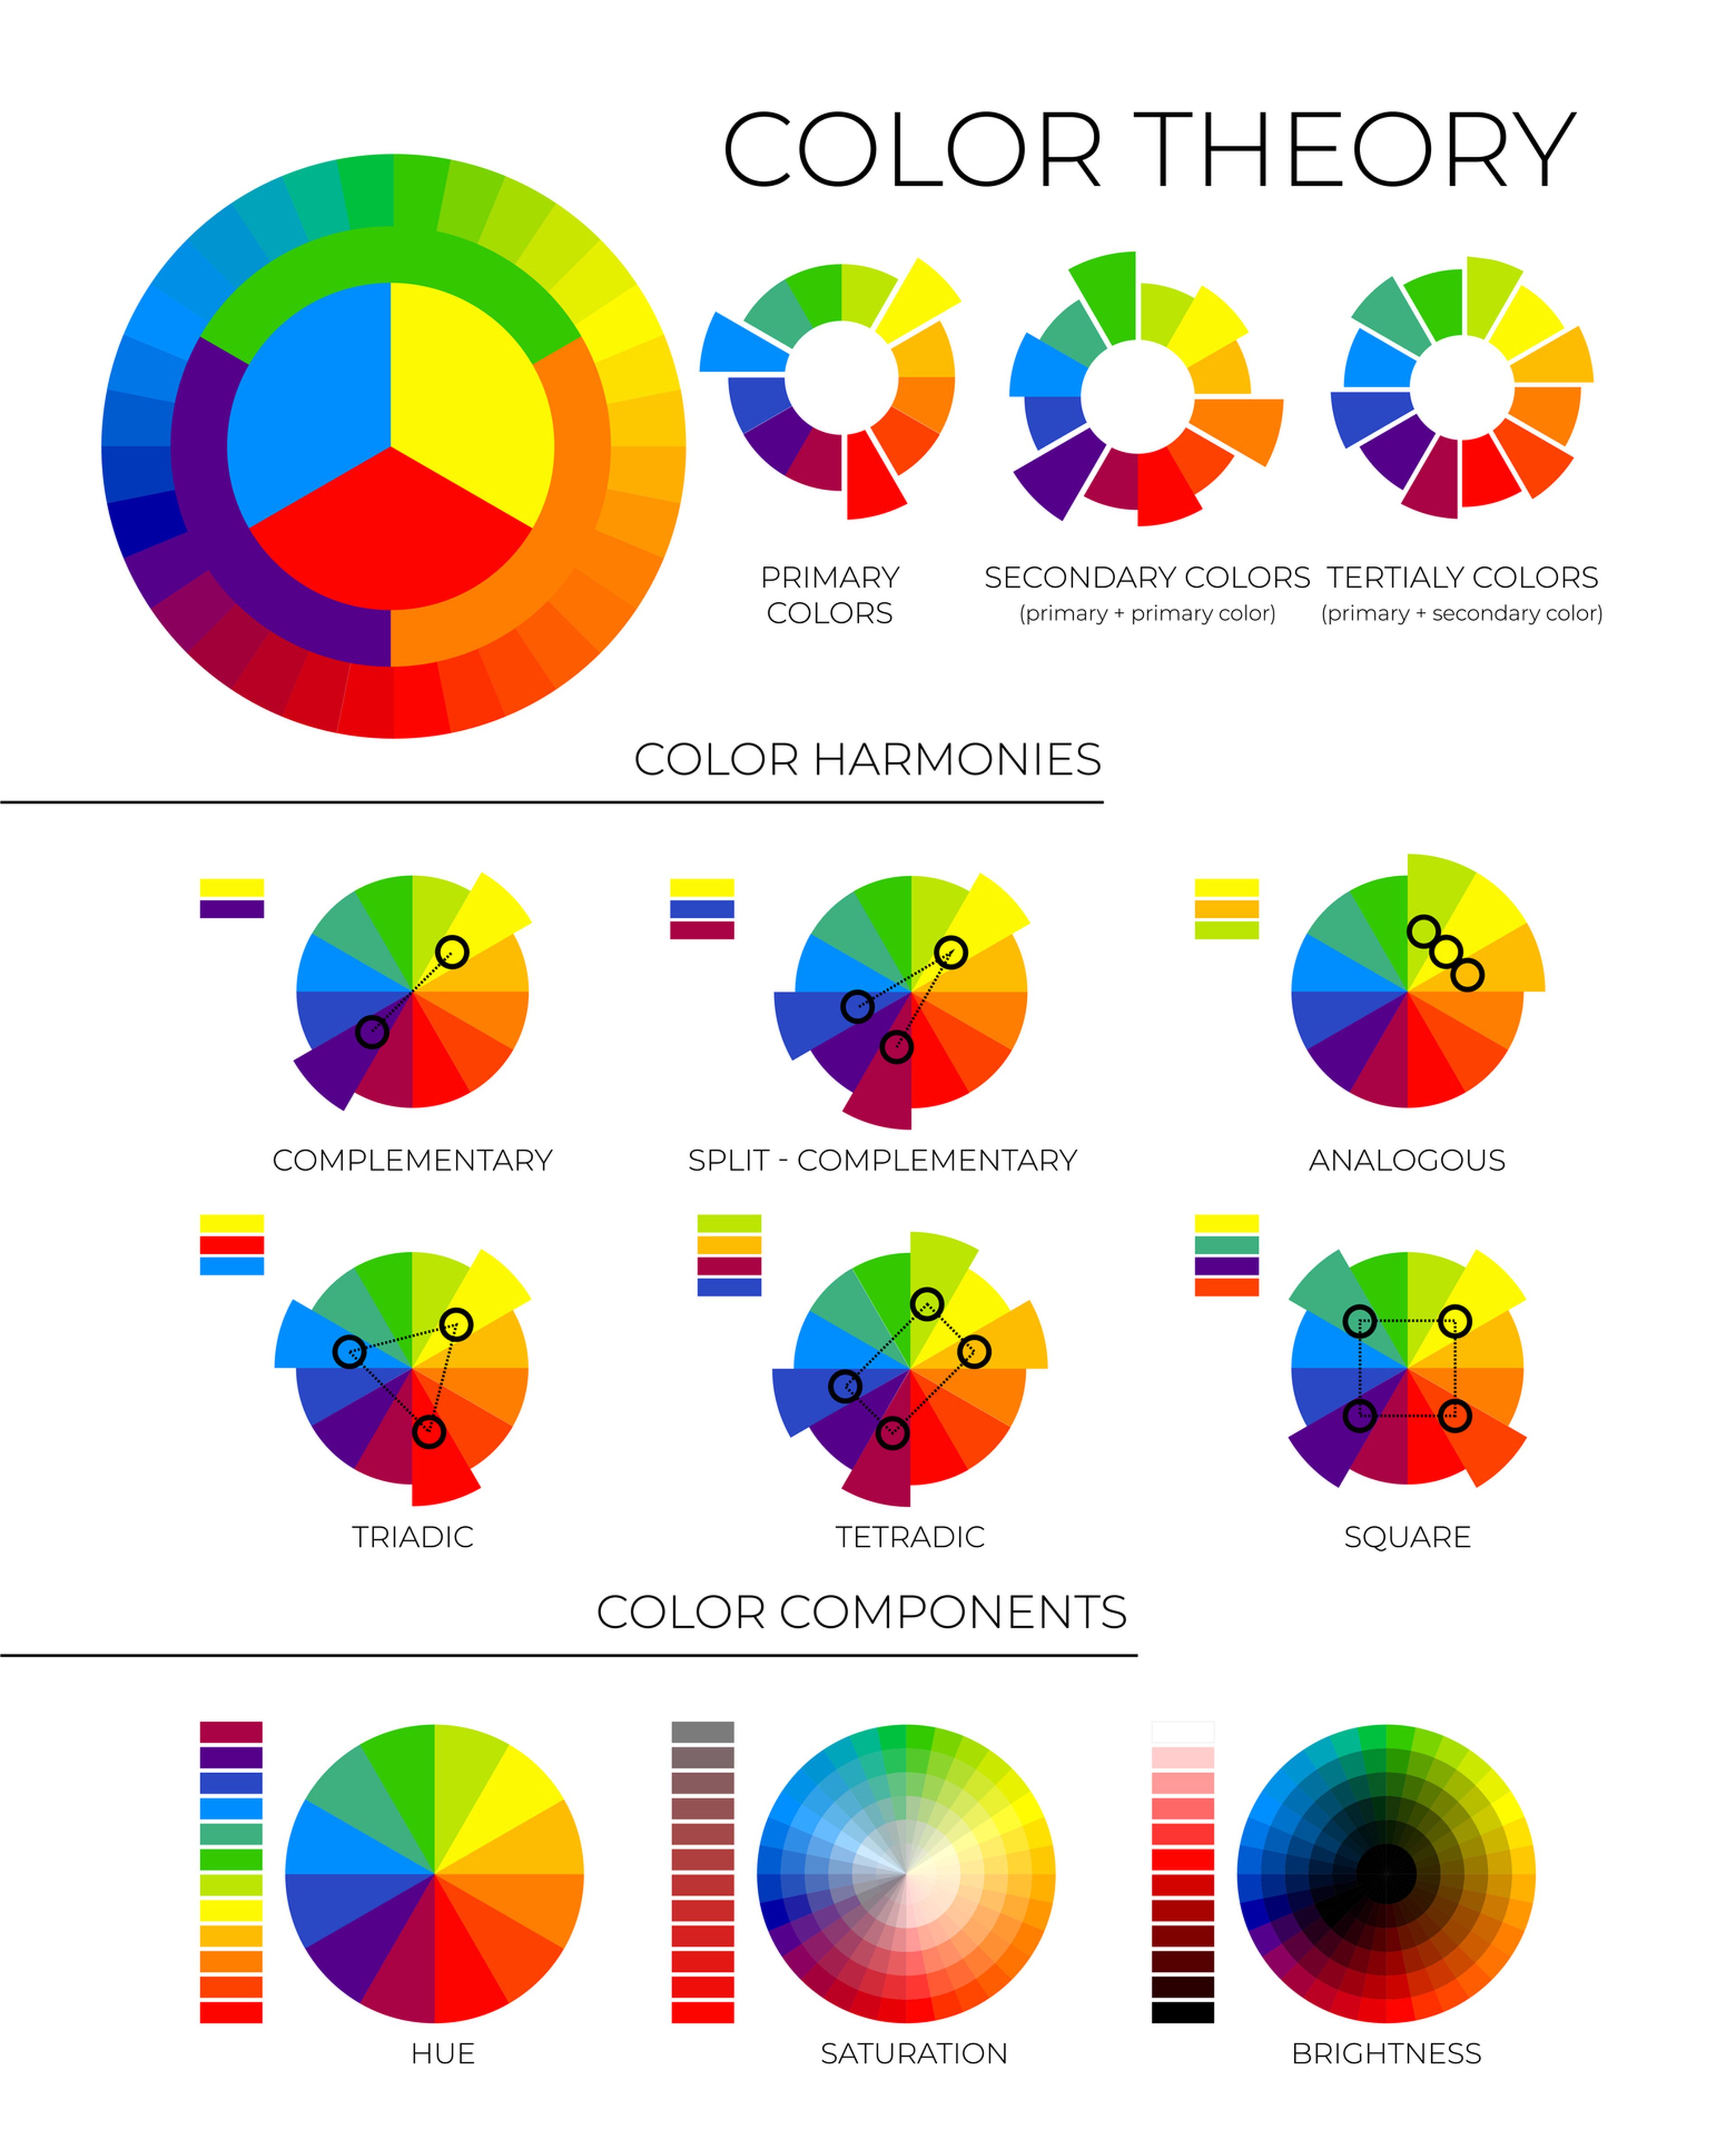 Sabes cómo combinar los colores de tu ropa?